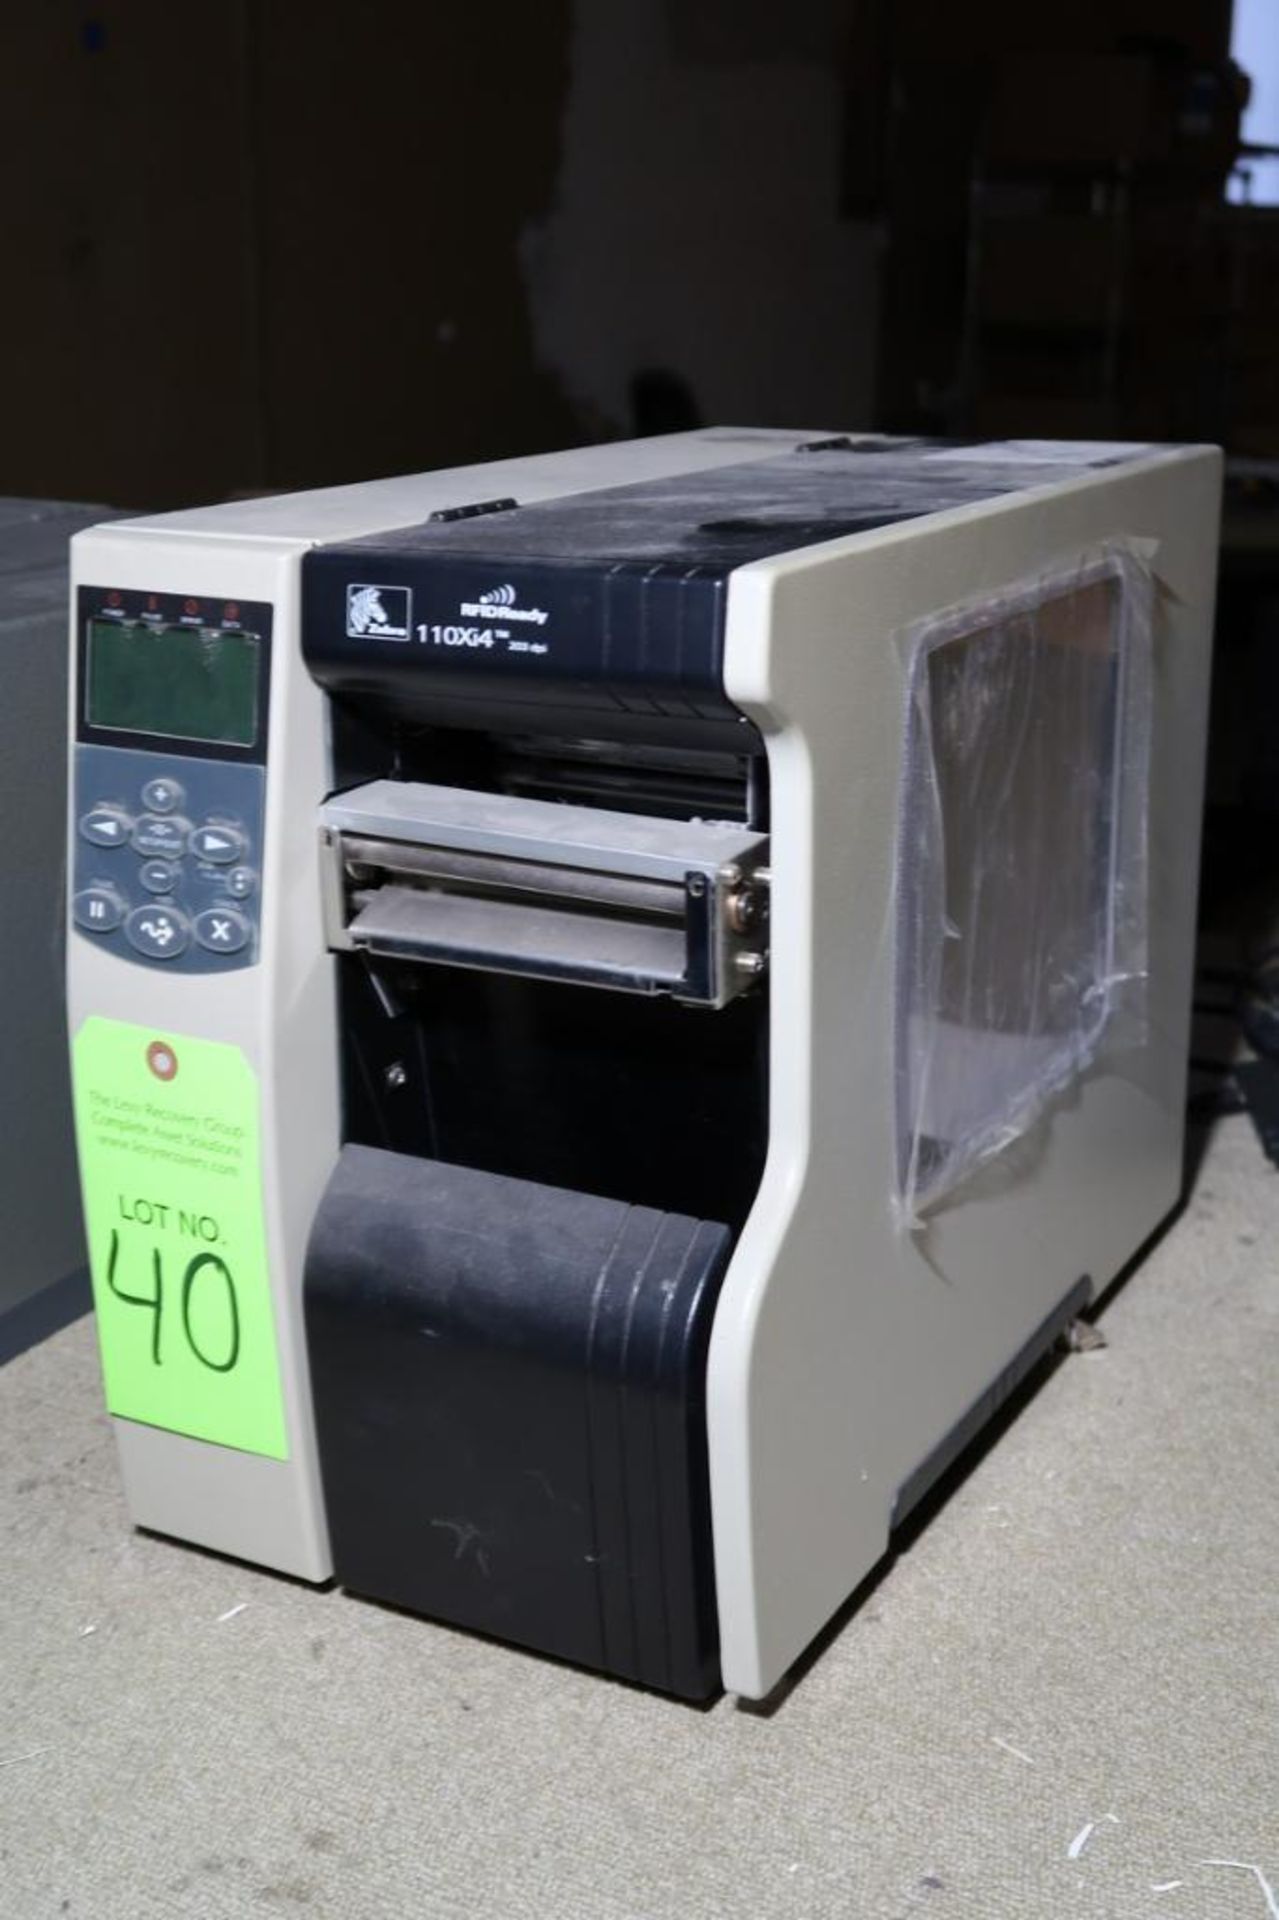 Zebra mdl. 110Xi4 Thermal Label Printer